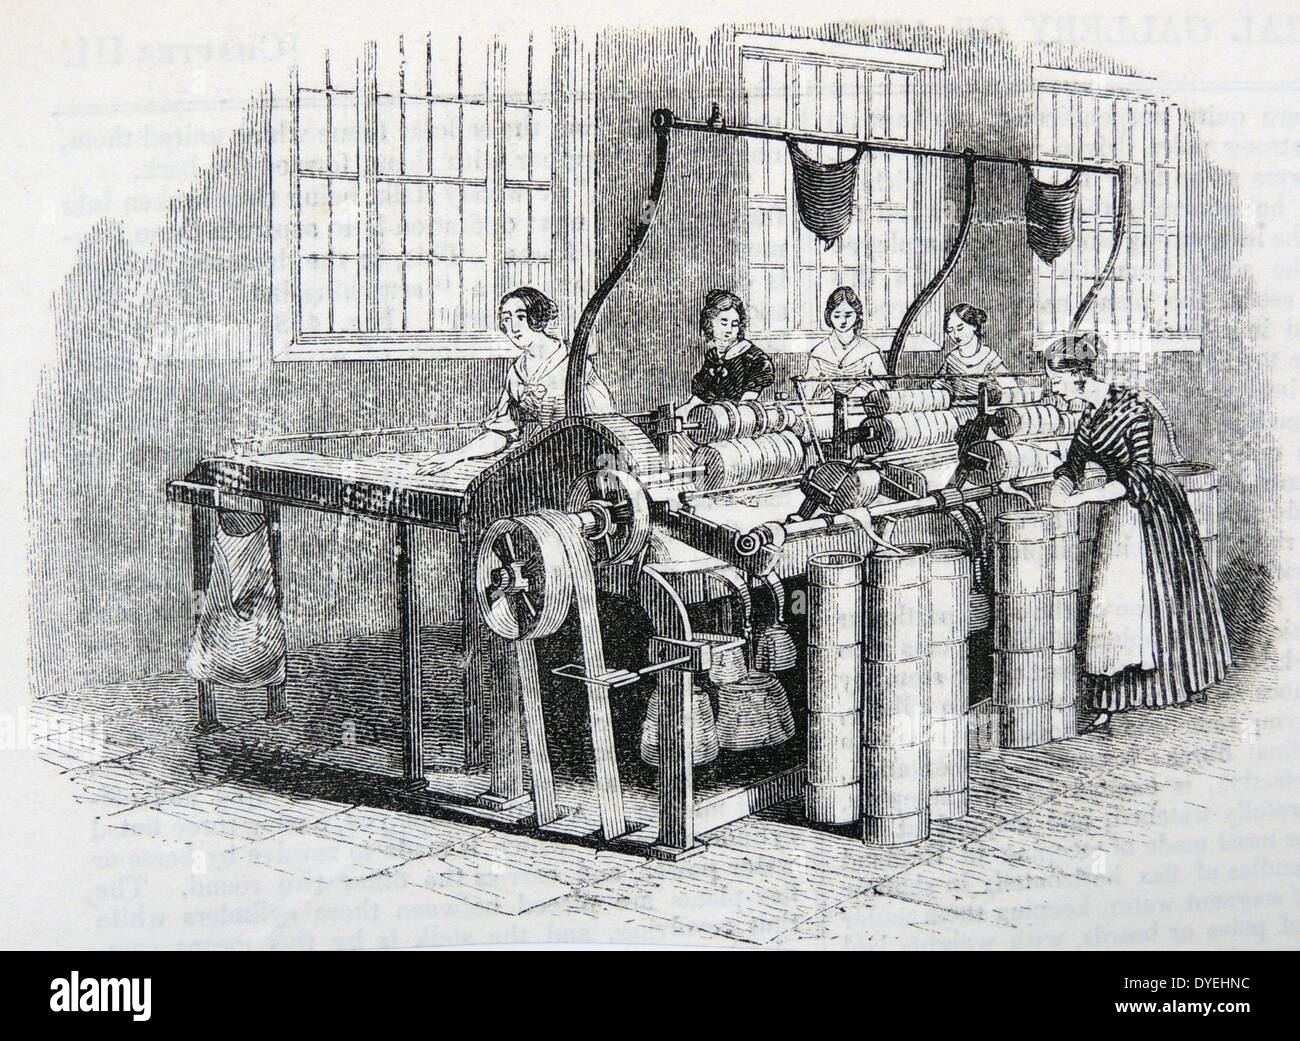 Frauen Zeichnung (Flyer) Flachs, Marshall's Flachs Mühle, Leeds, Yorkshire. Kupferstich, London, 1843. Stockfoto